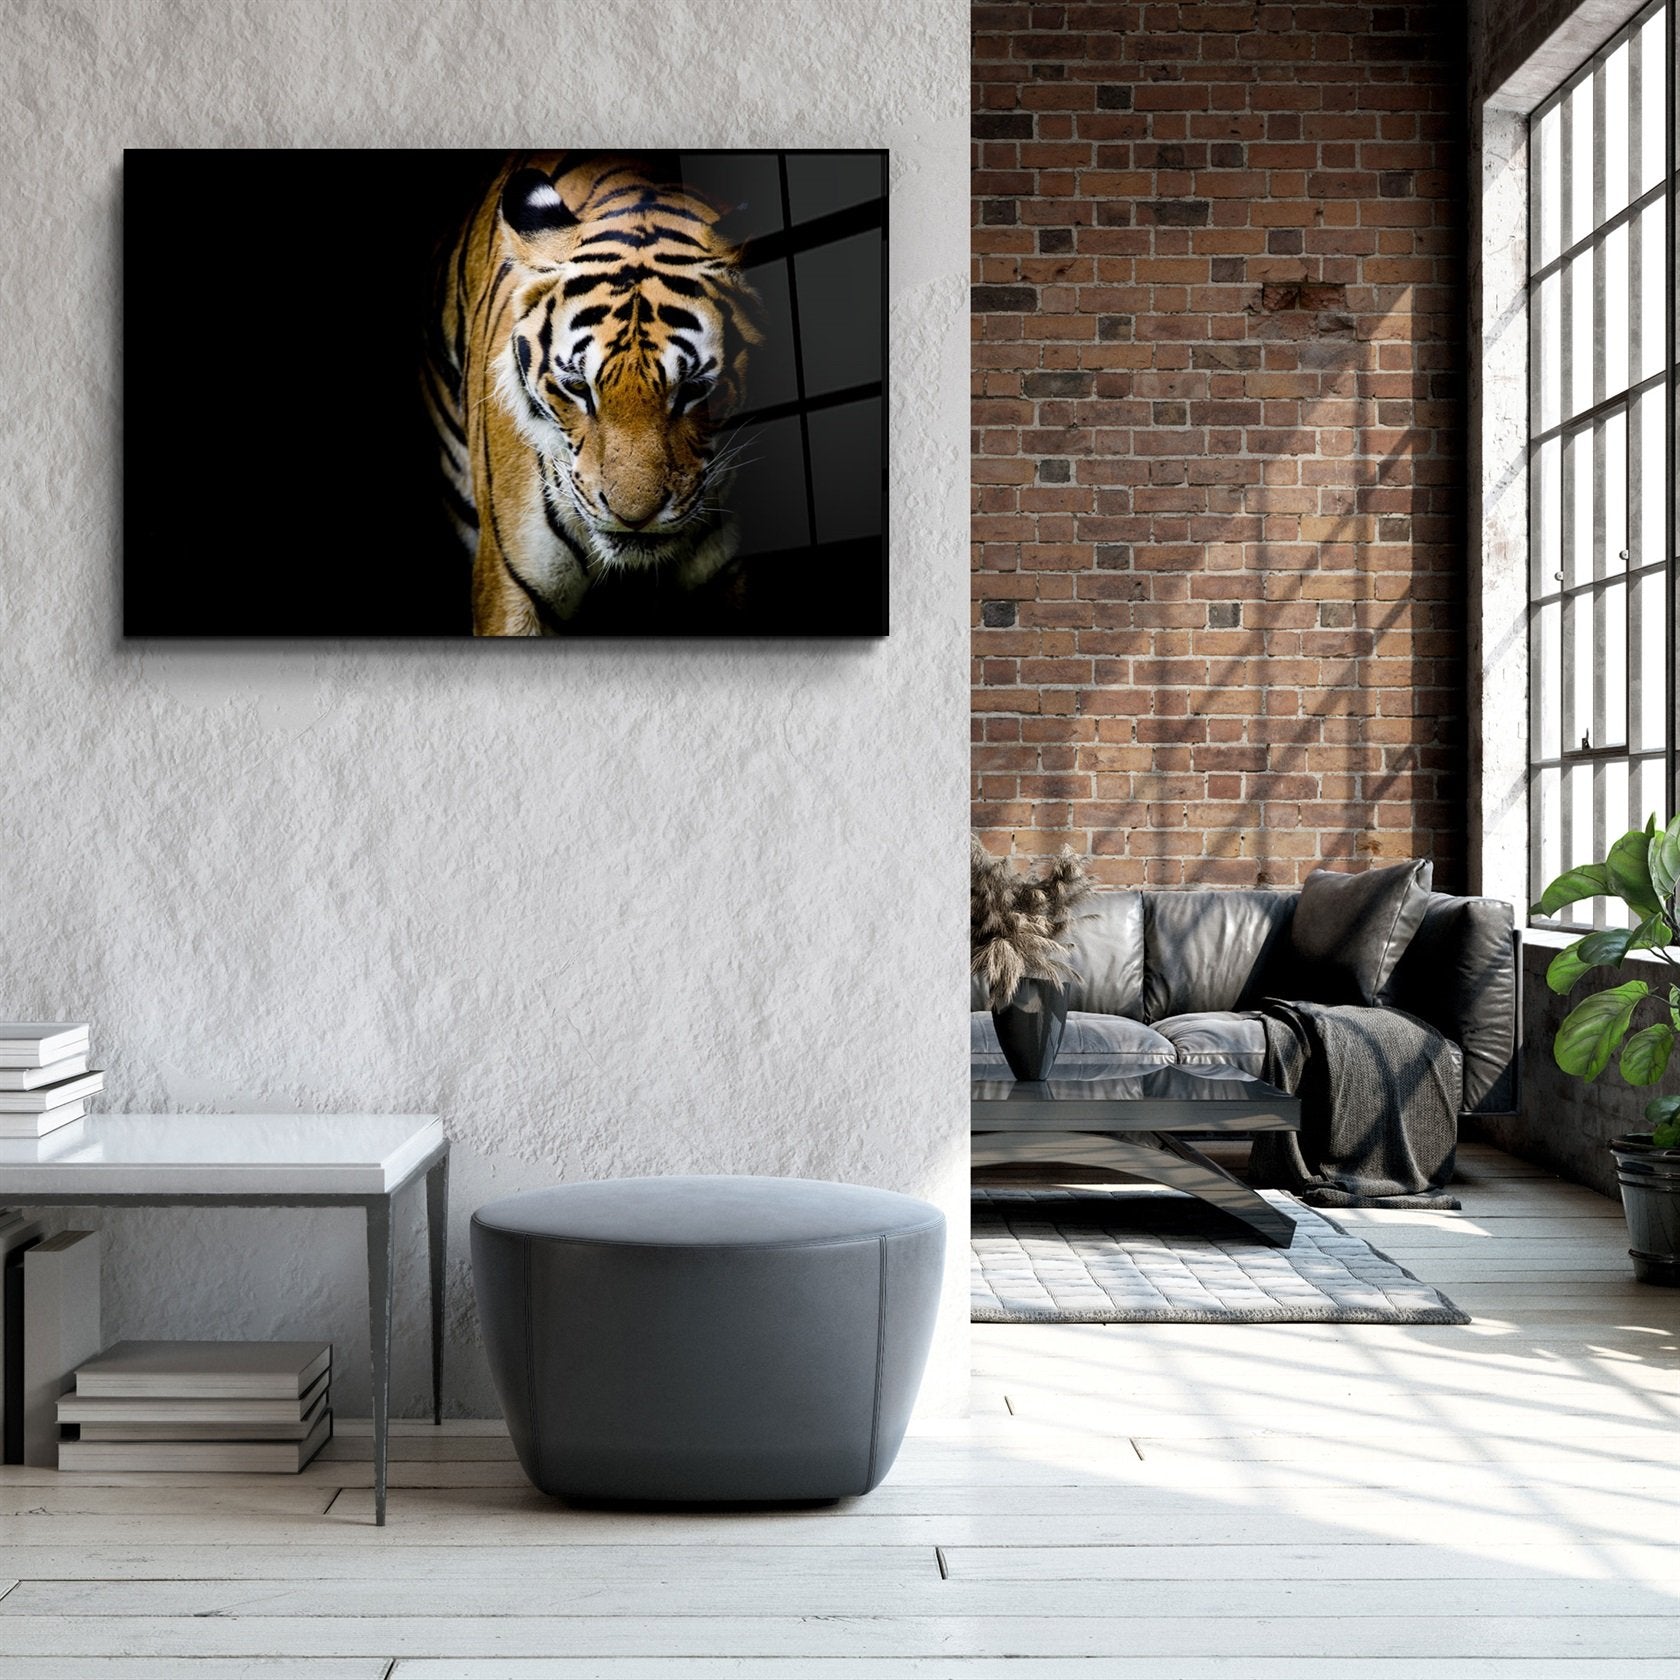 ・"Tiger 3"・Glass Wall Art